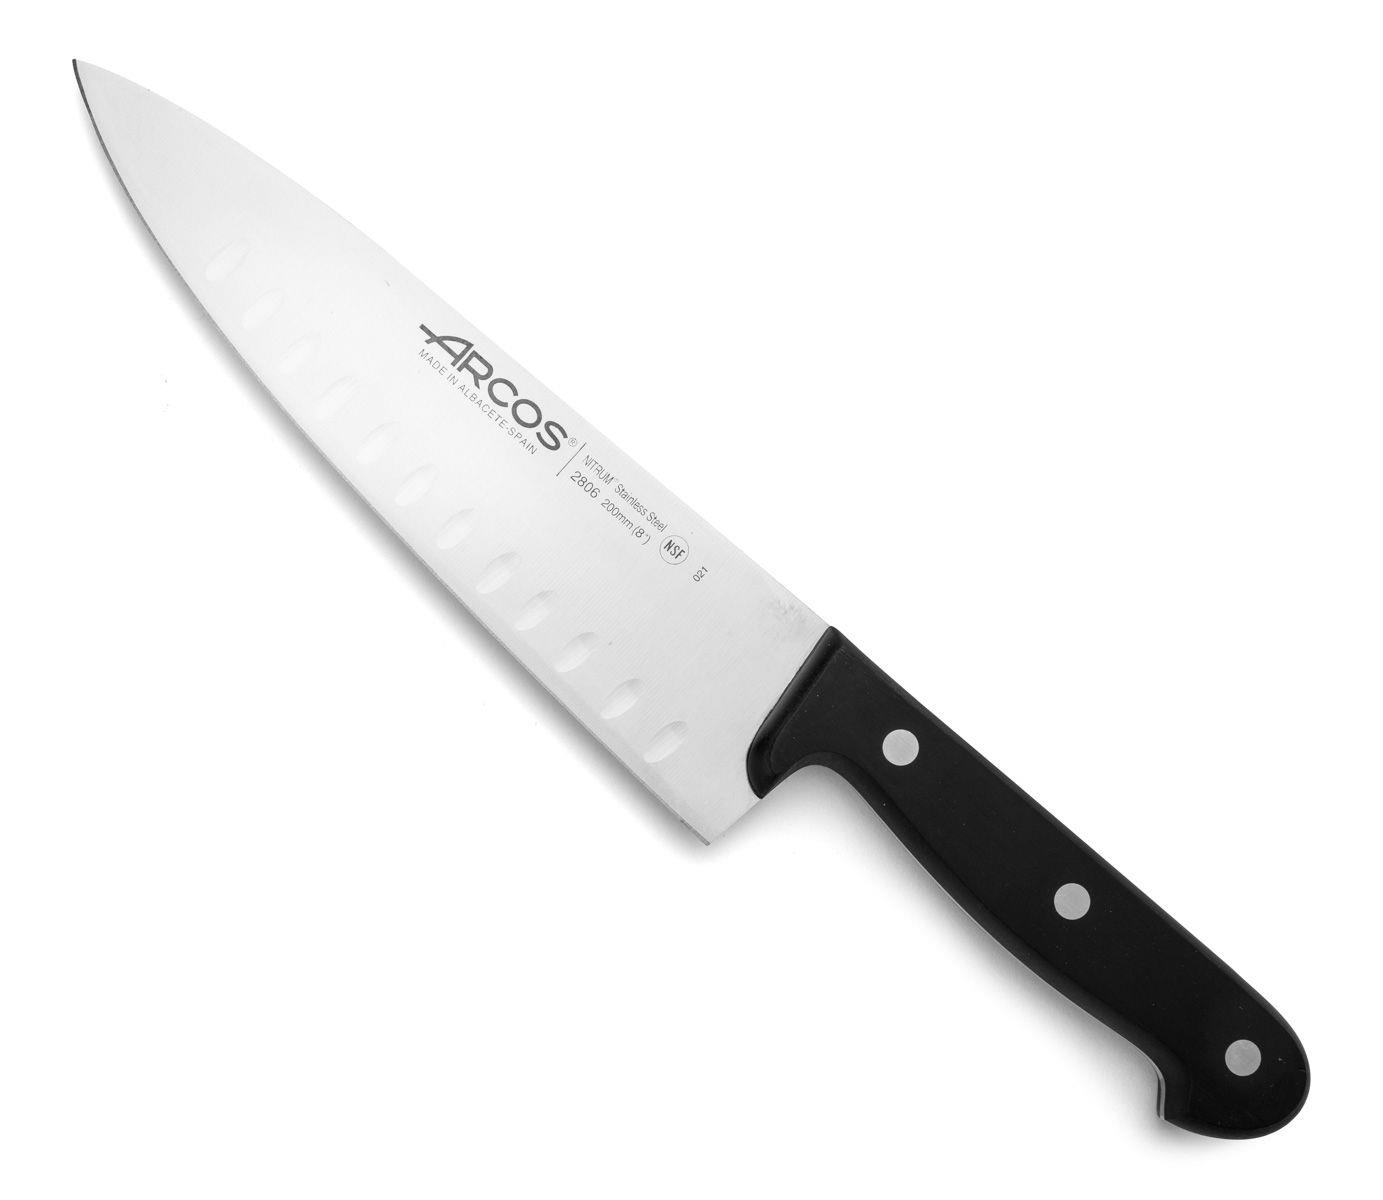 סכין שף - ארקוס דגם 2806-021